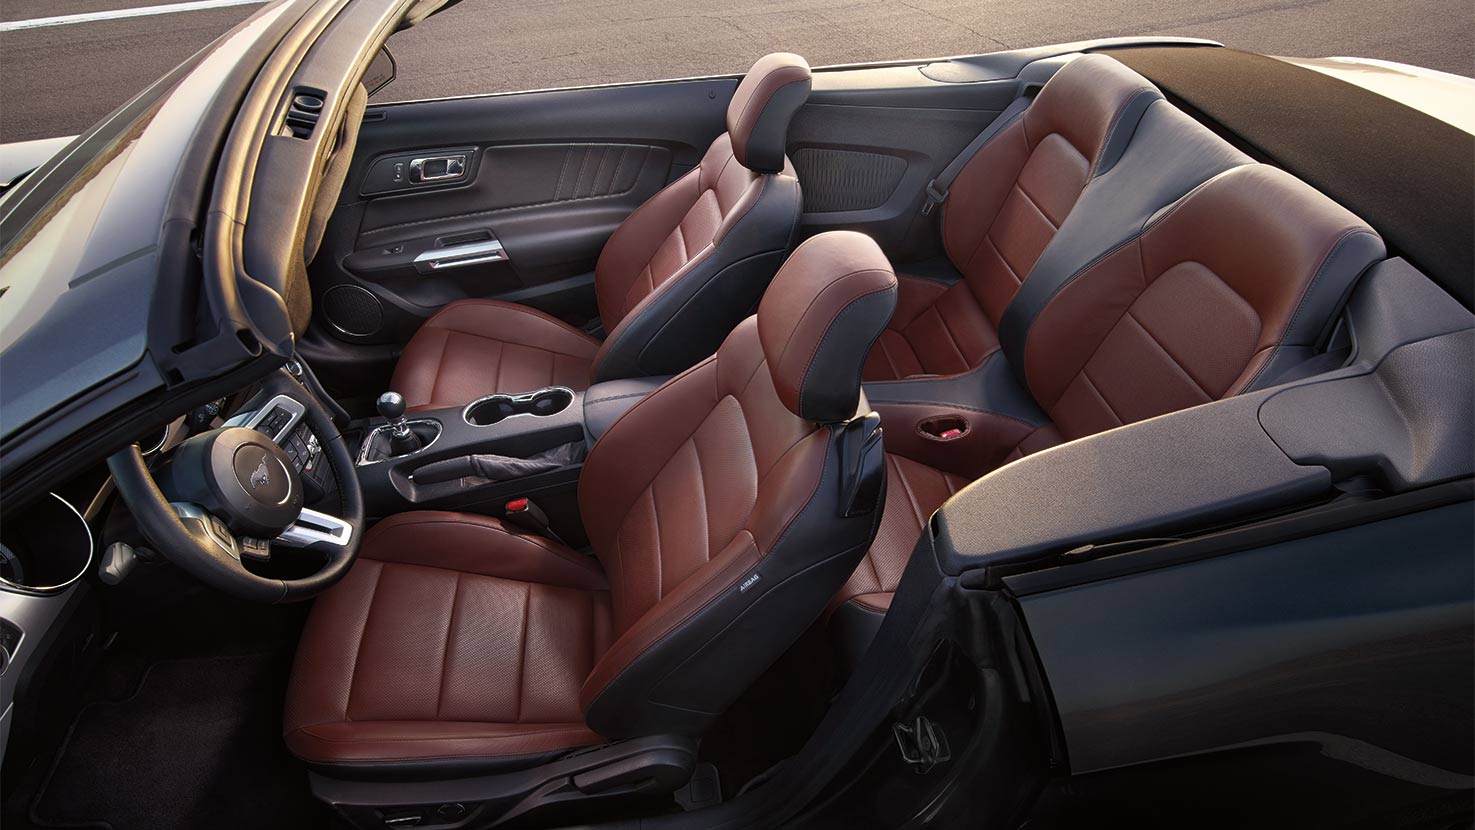 Mustang GT Premium Convertible interior in Dark Saddle.